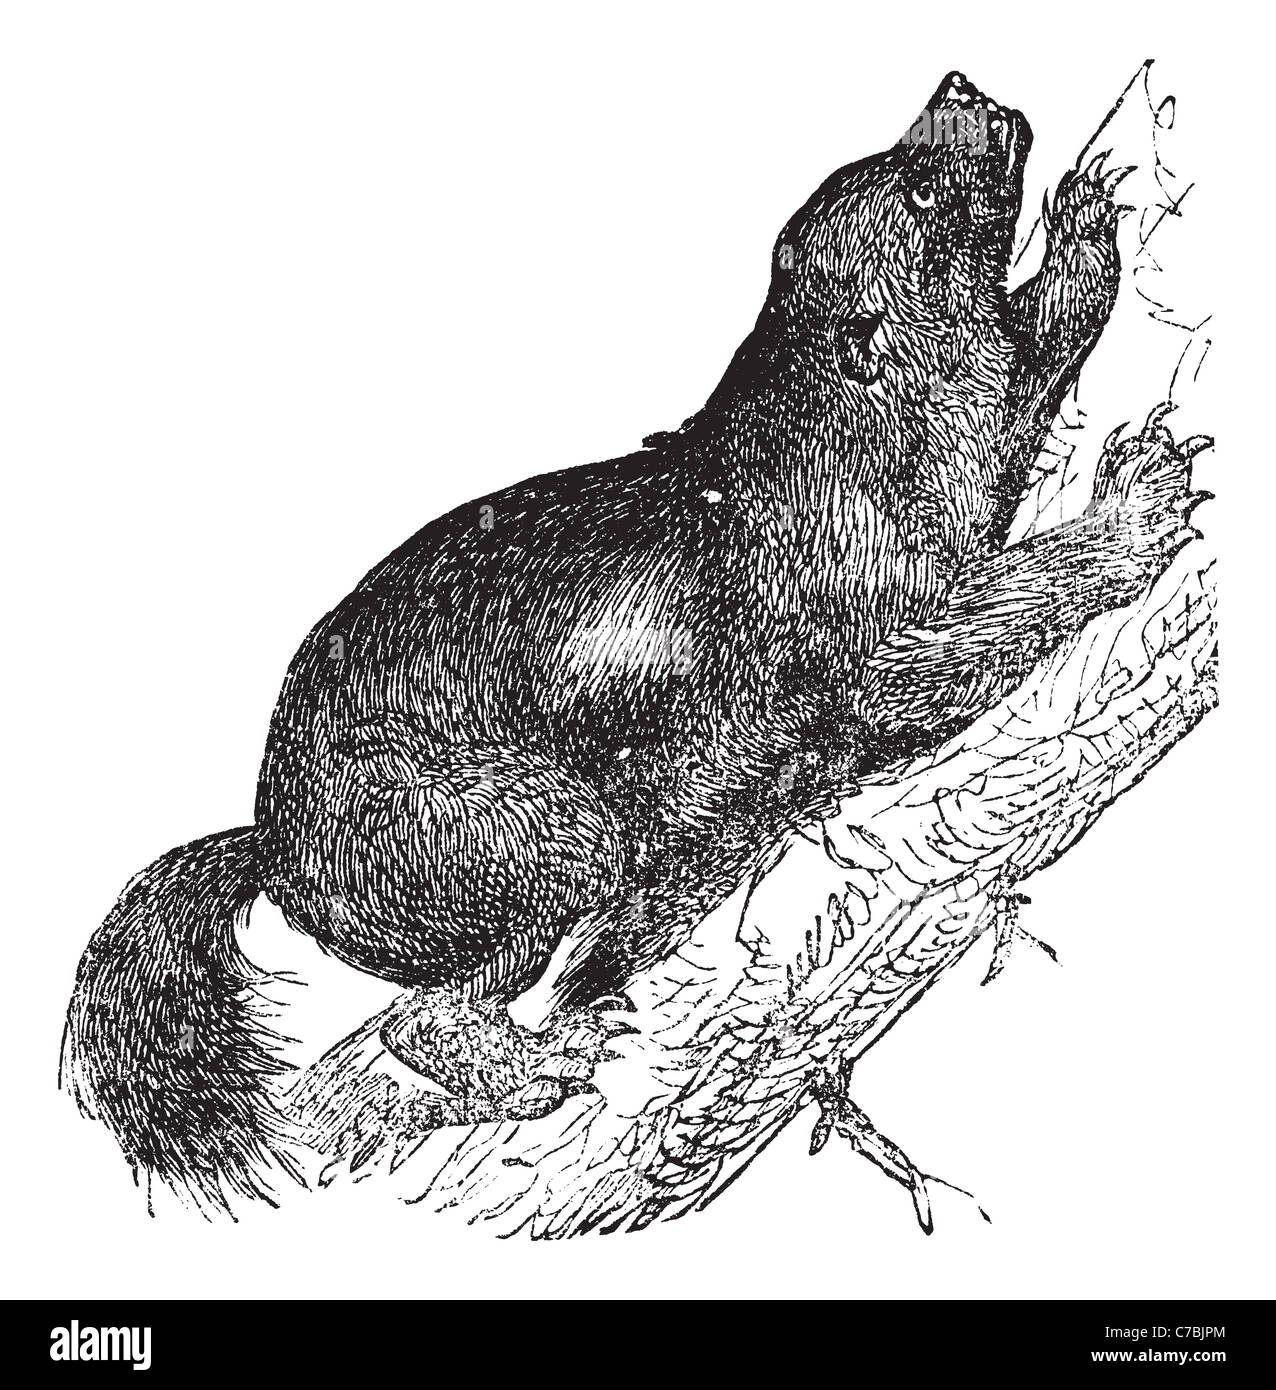 Wolverine o Skunk orso o Quickhatch o Gulon, vintage incisione. Vecchie illustrazioni incise di Wolverine, arrampicata sull'albero. Foto Stock